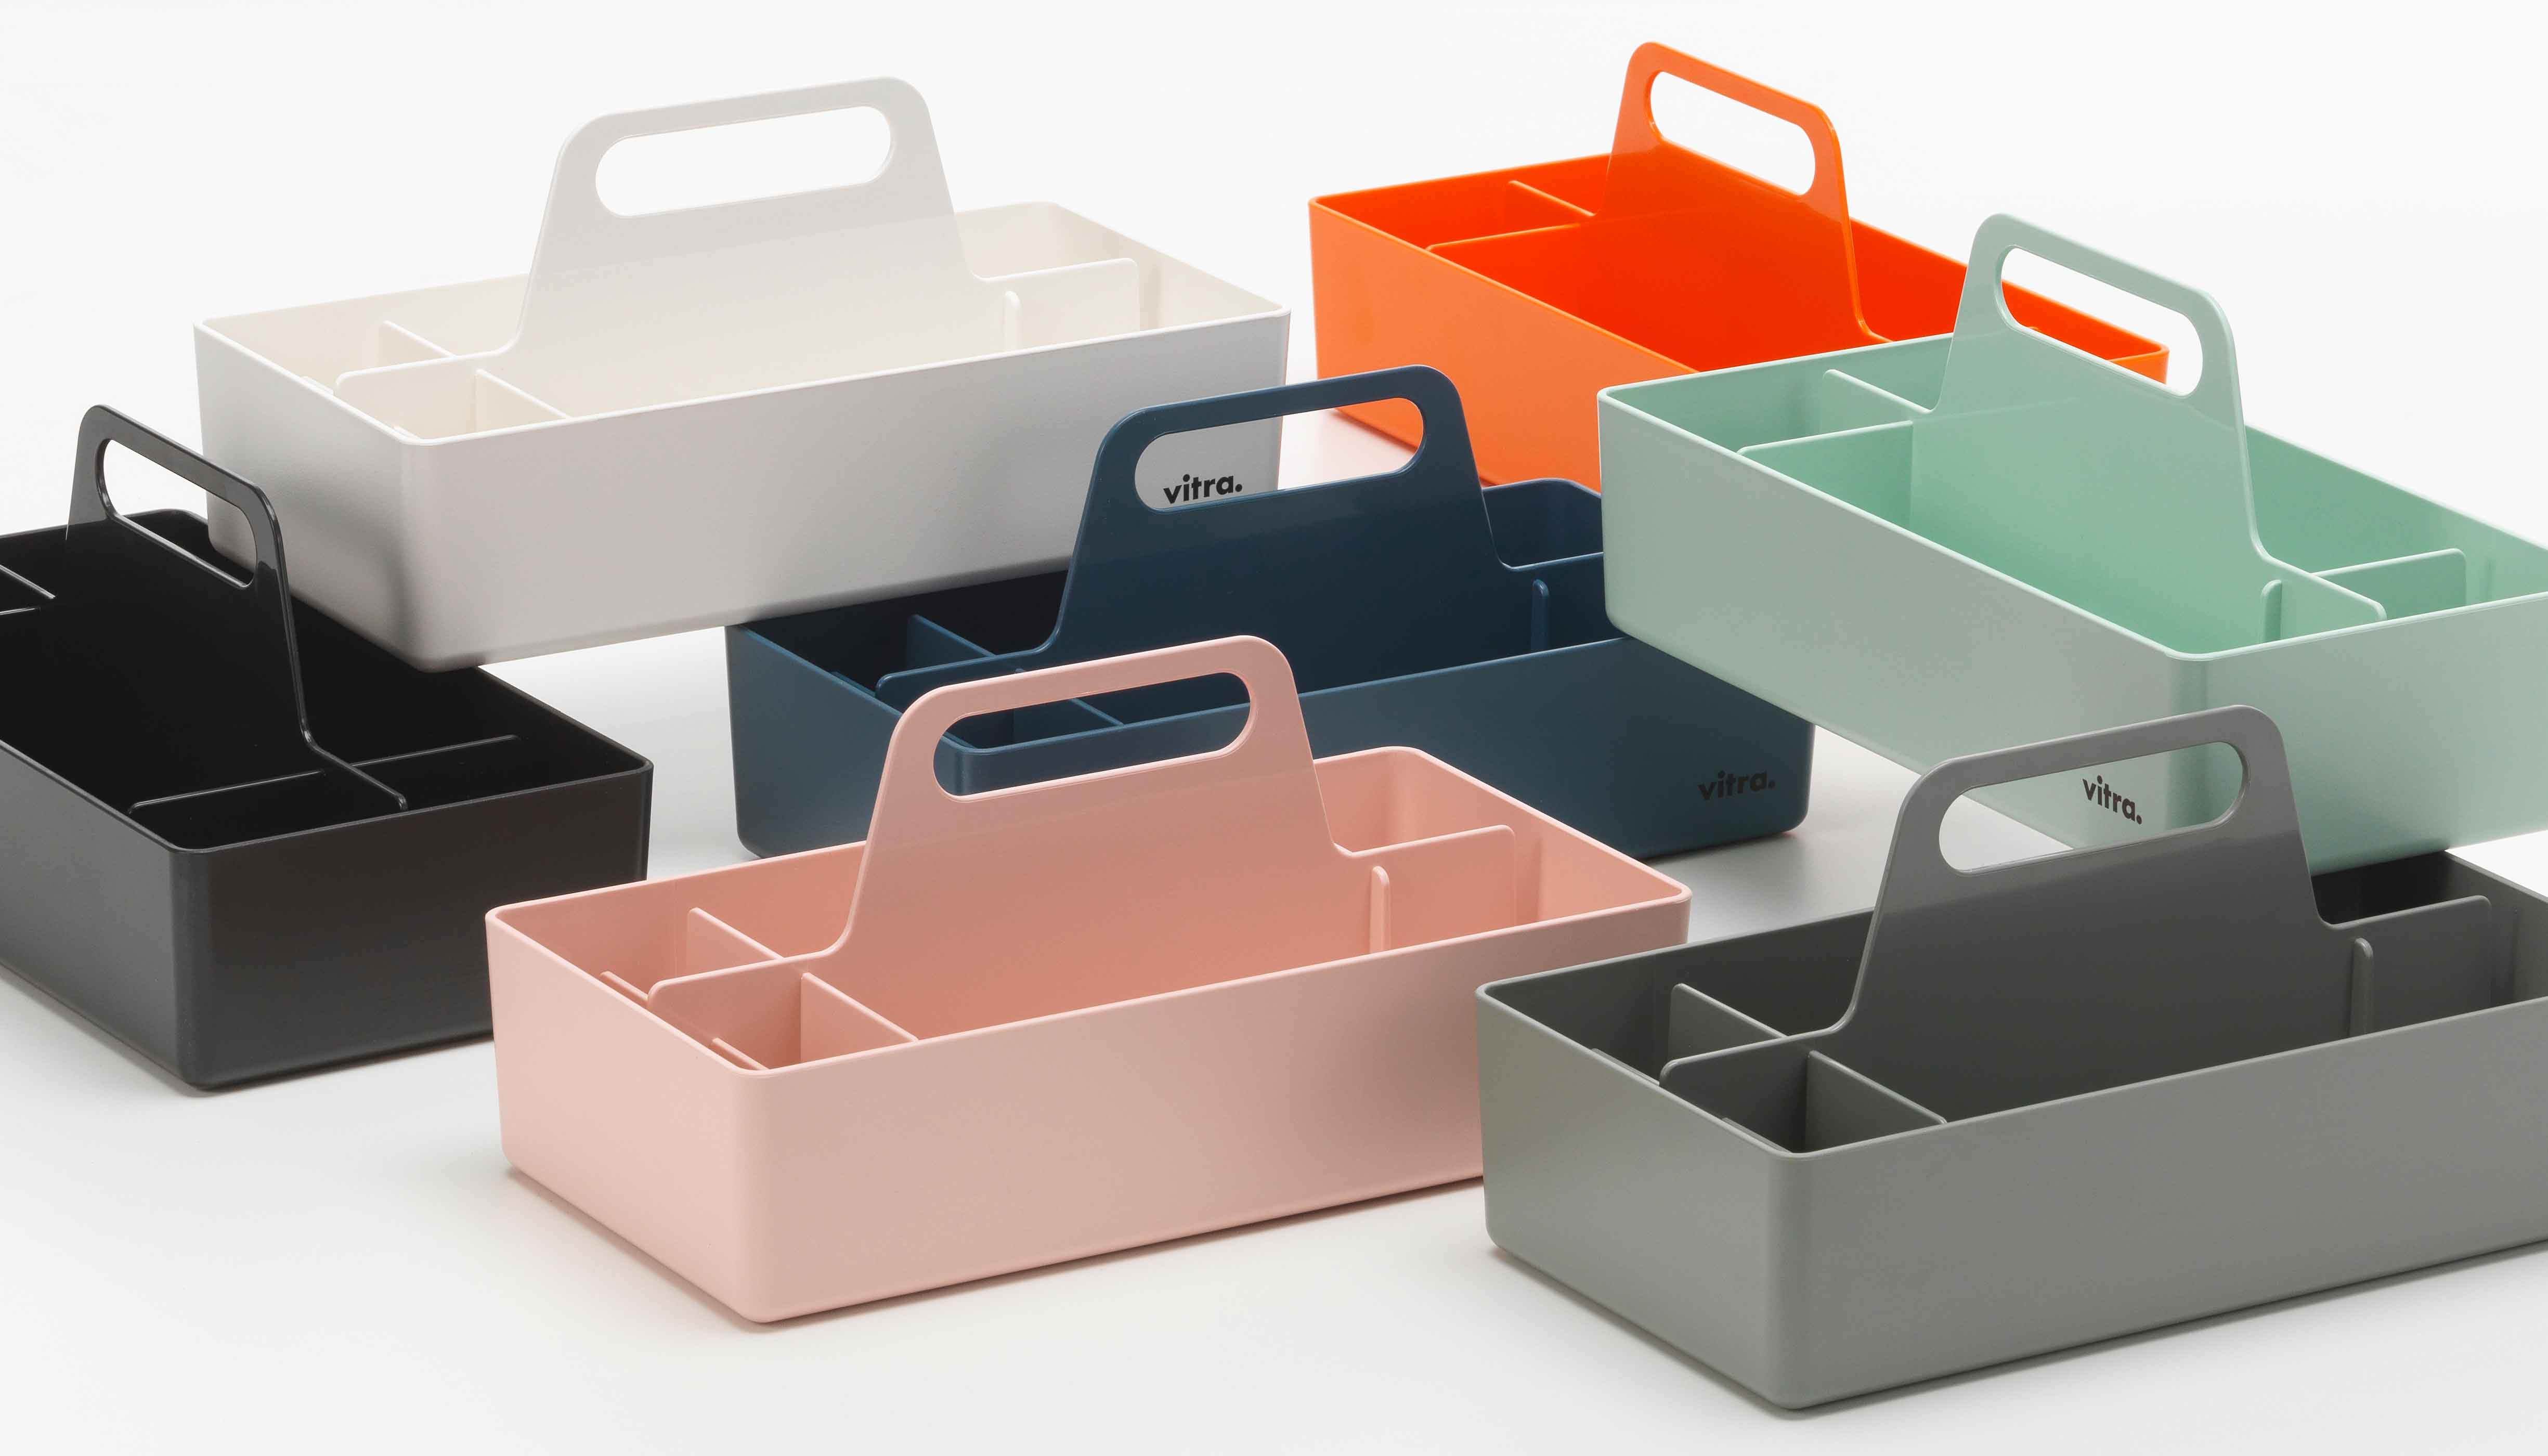 Toolbox RE weiss von vitra im LHL Onlineshop kaufen - Farbige Boxen zusammen